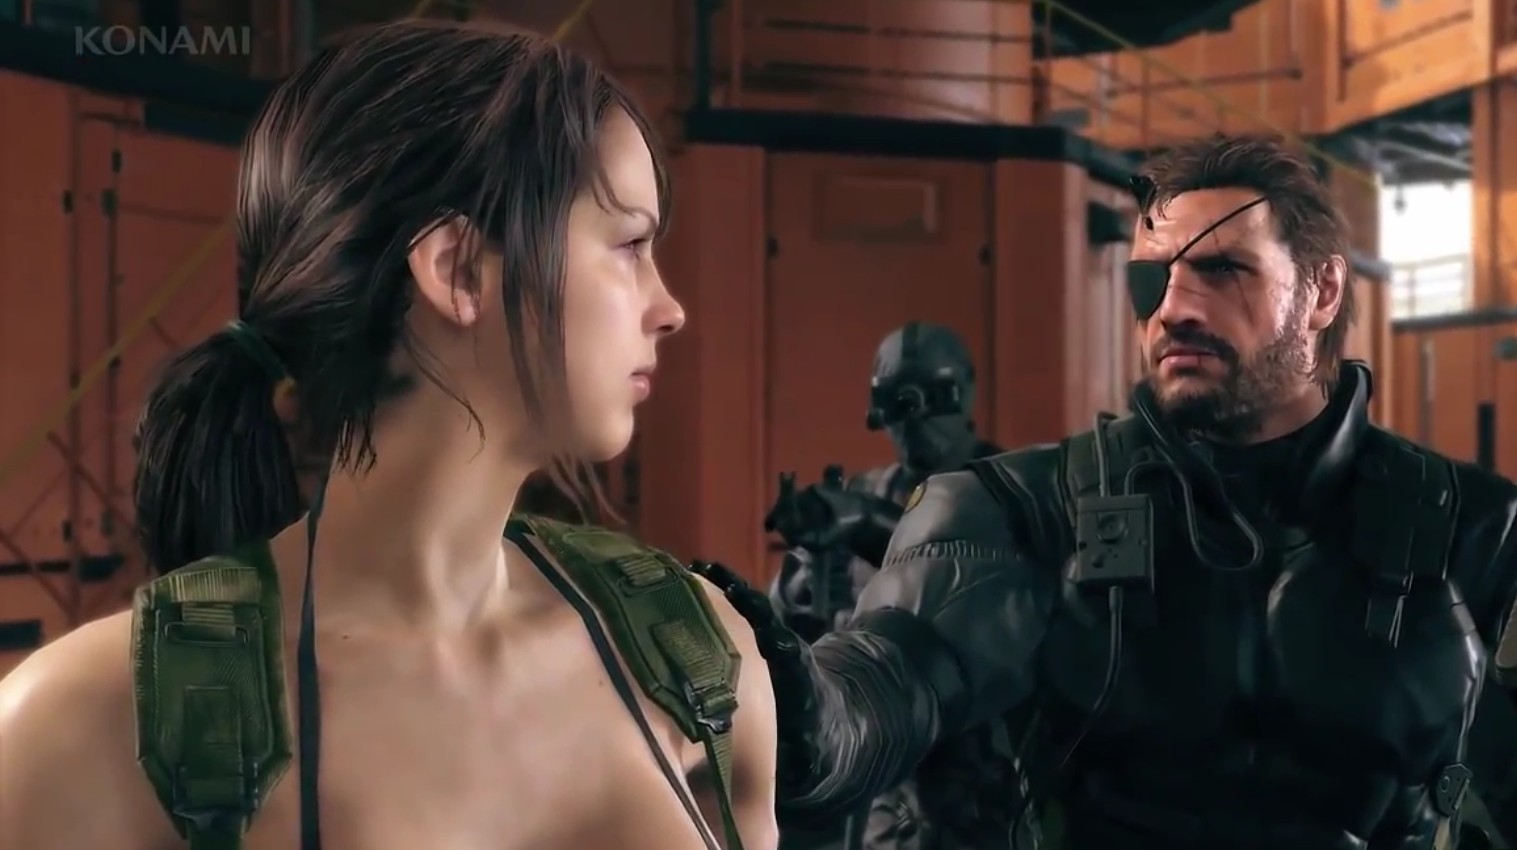 Metal Gear Solid 5: The Phantom Pain – Hideo Kojima spricht über Quiet und DD (+ Gameplay Trailer)